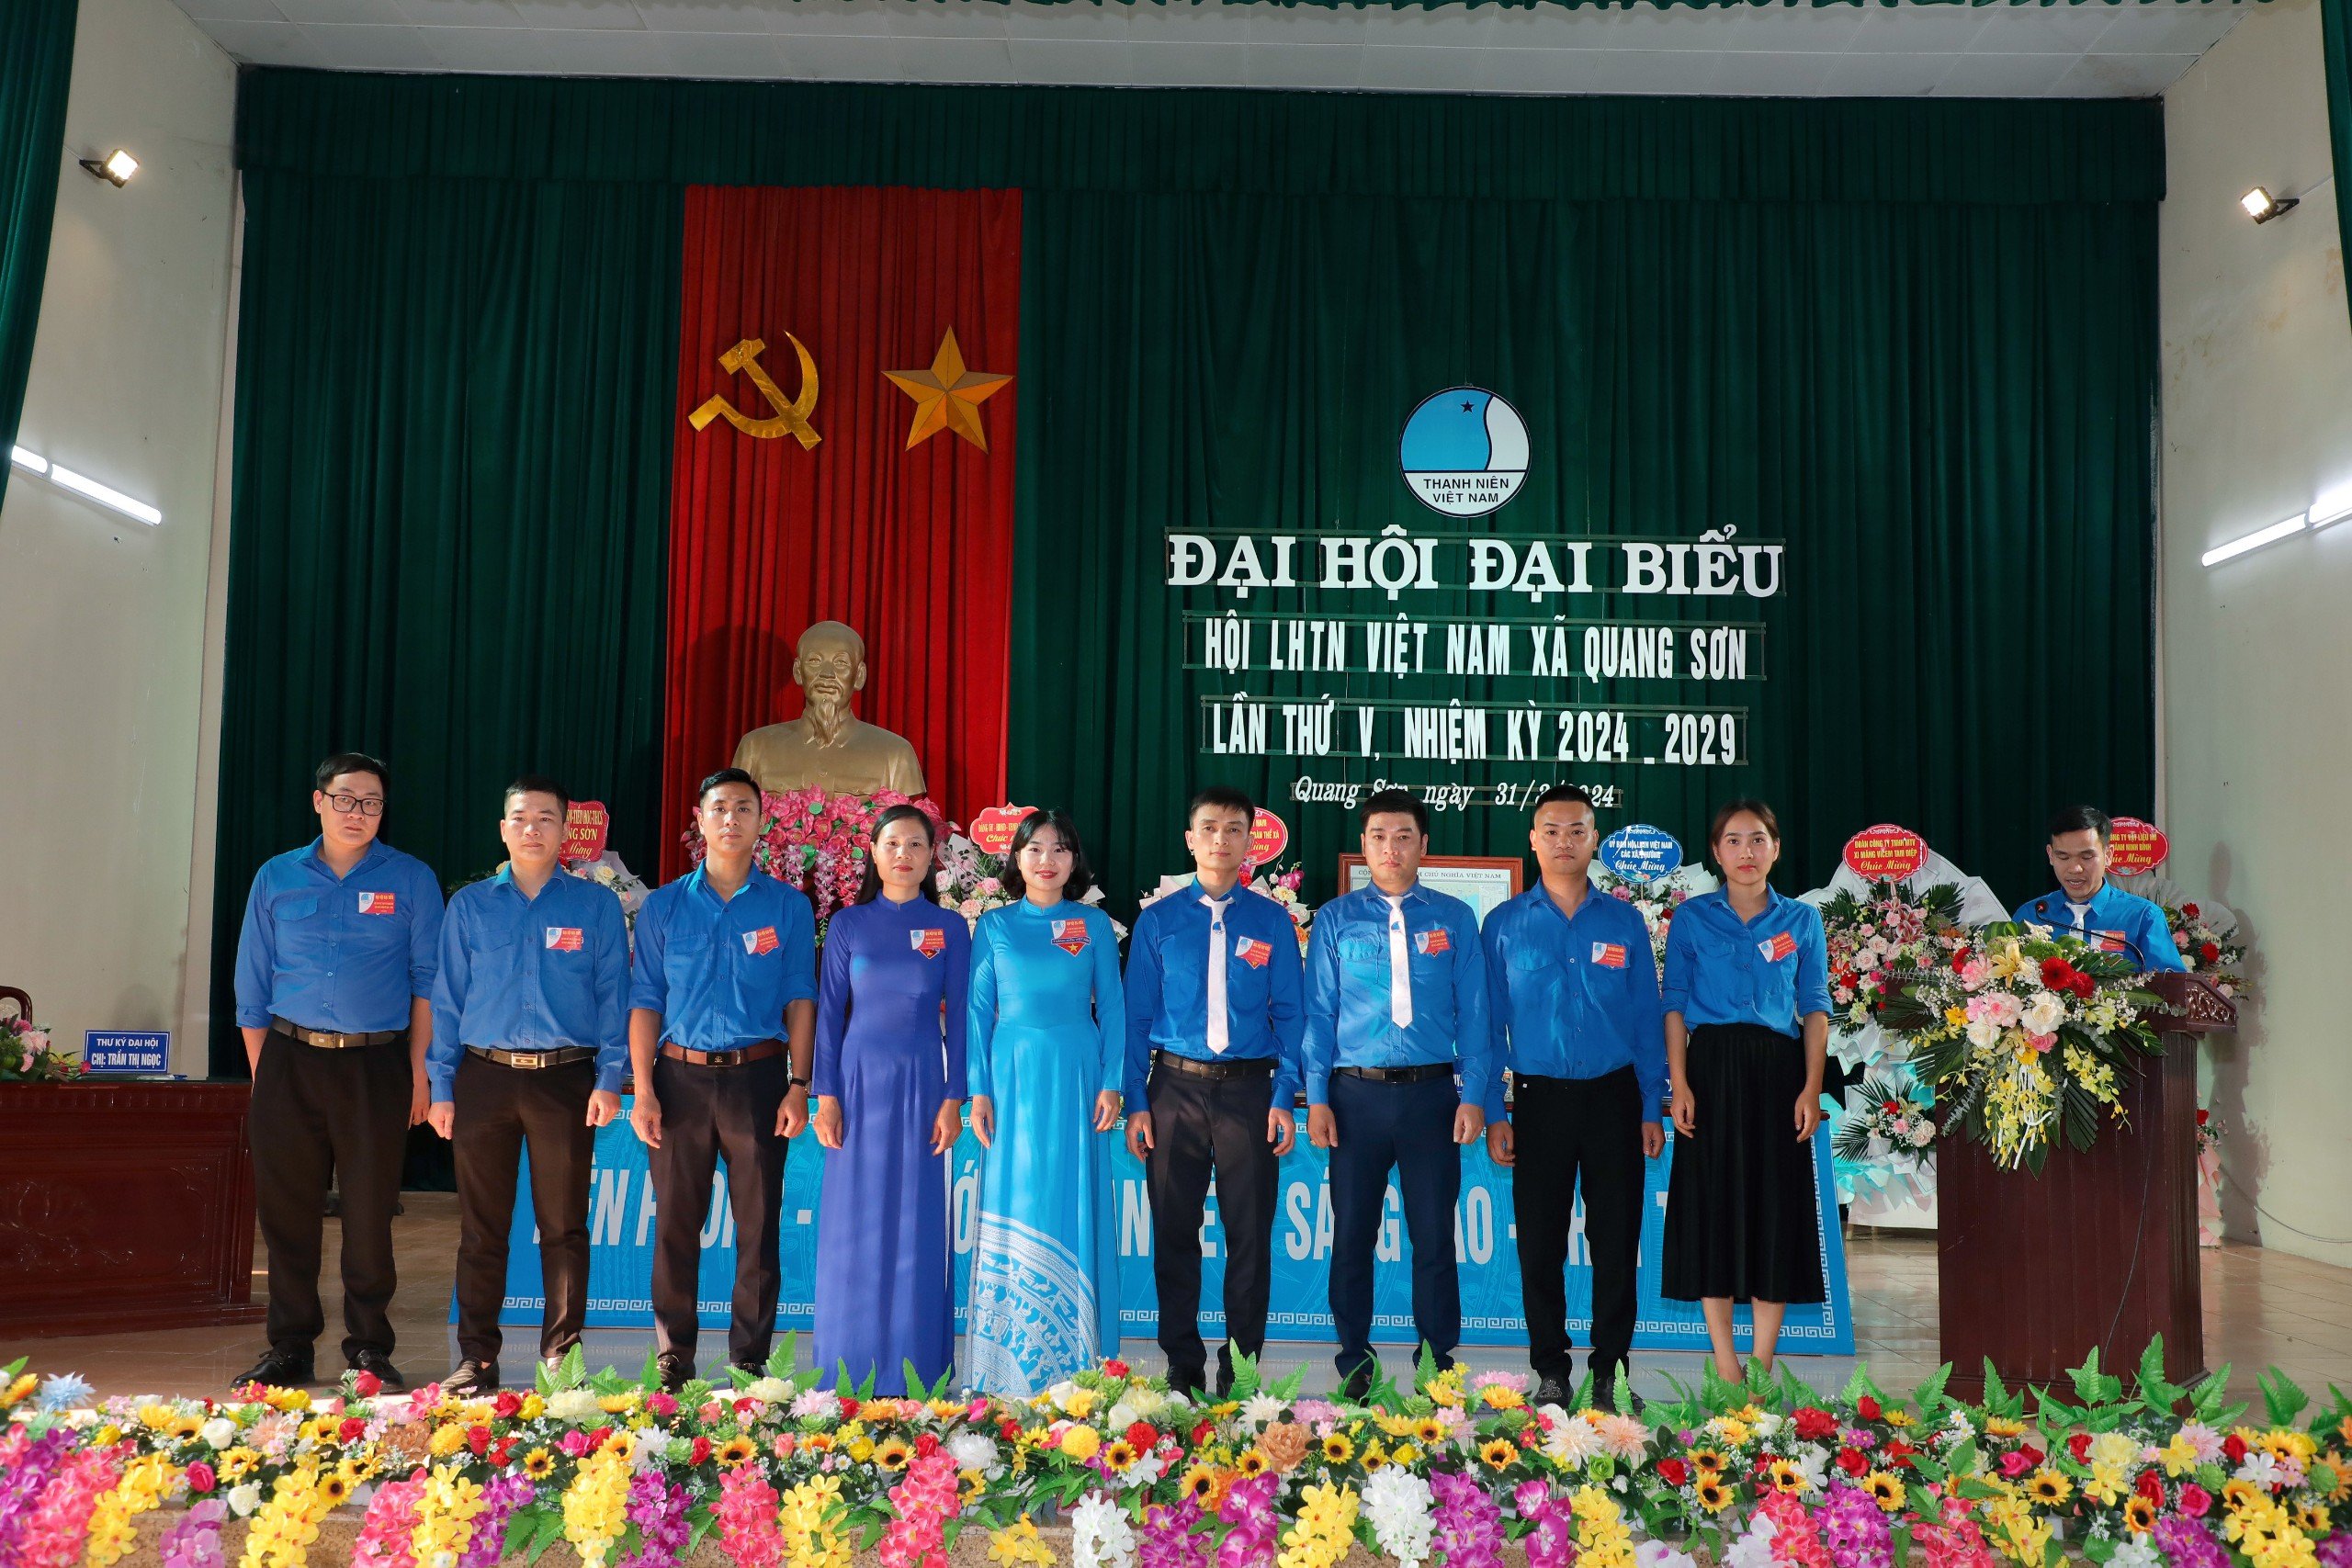 Hội LHTN Việt Nam xã Quang Sơn, Đại hội đại biểu lần thứ V, nhiệm kỳ 2024-2029